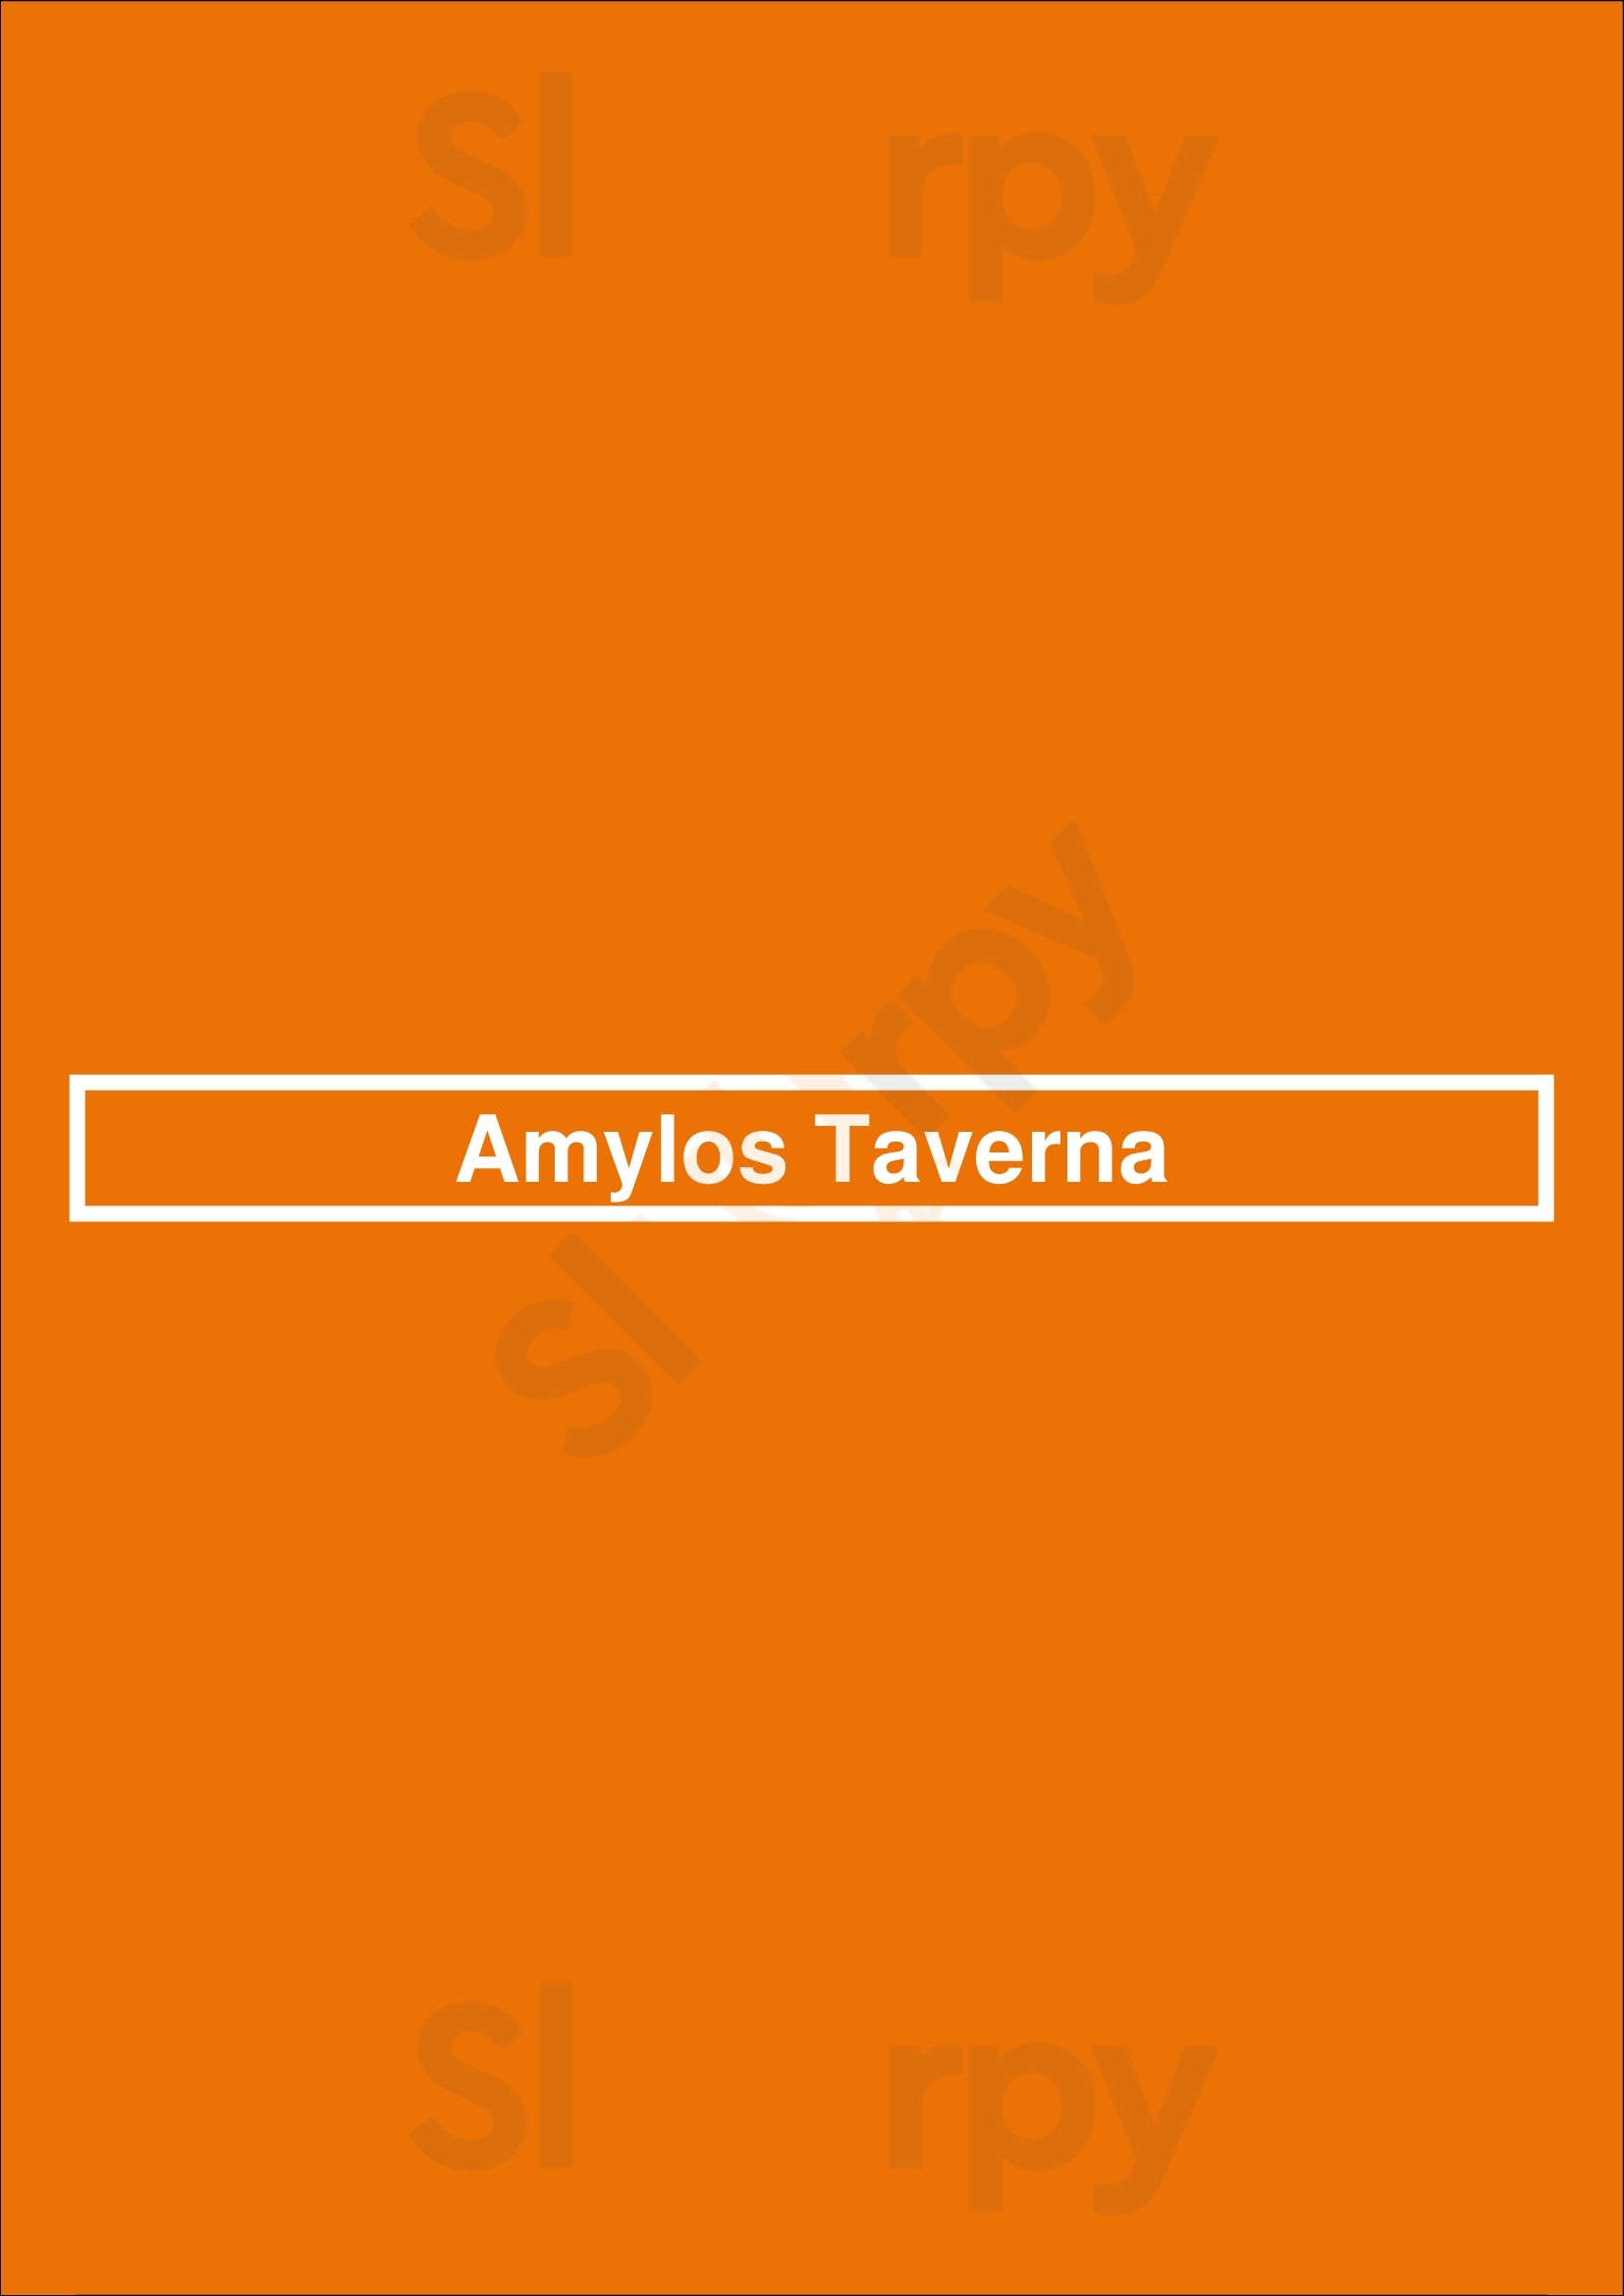 Amylos Taverna Astoria Menu - 1